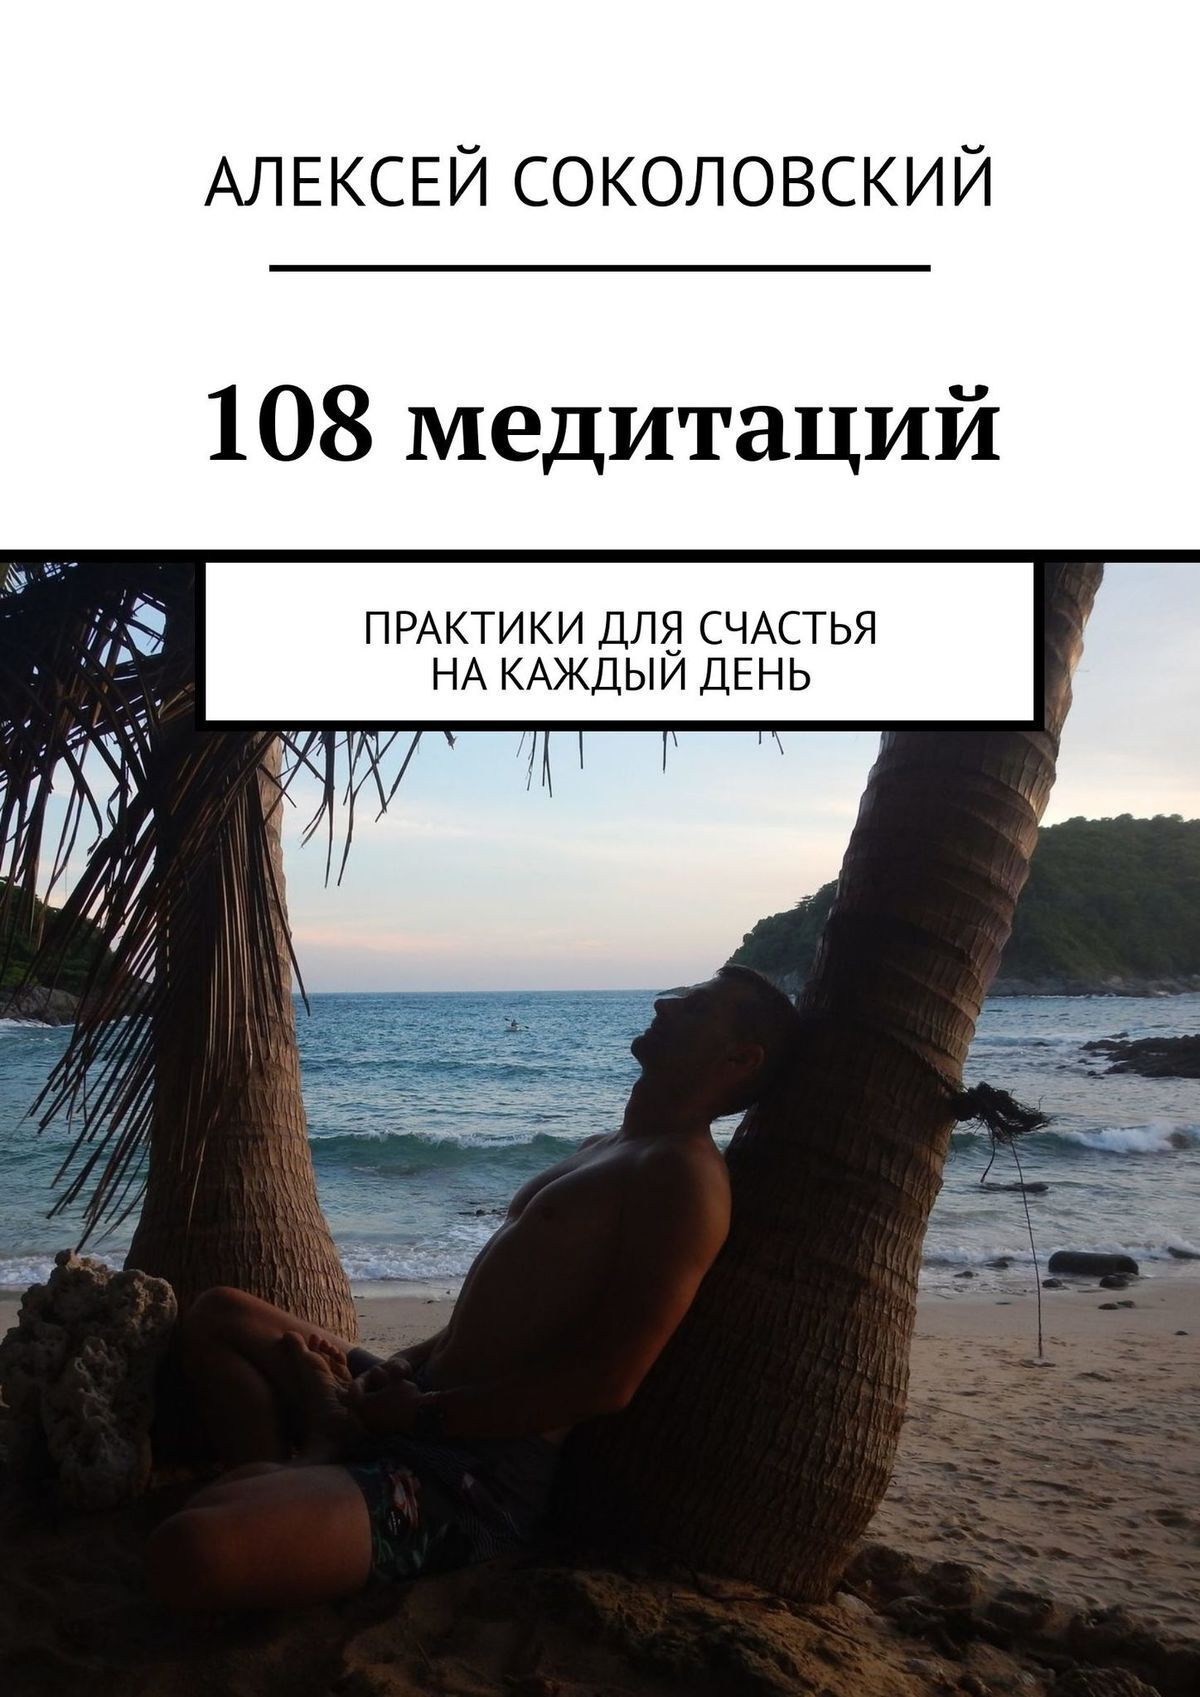 108 практик для счастья. Медитации на каждый день